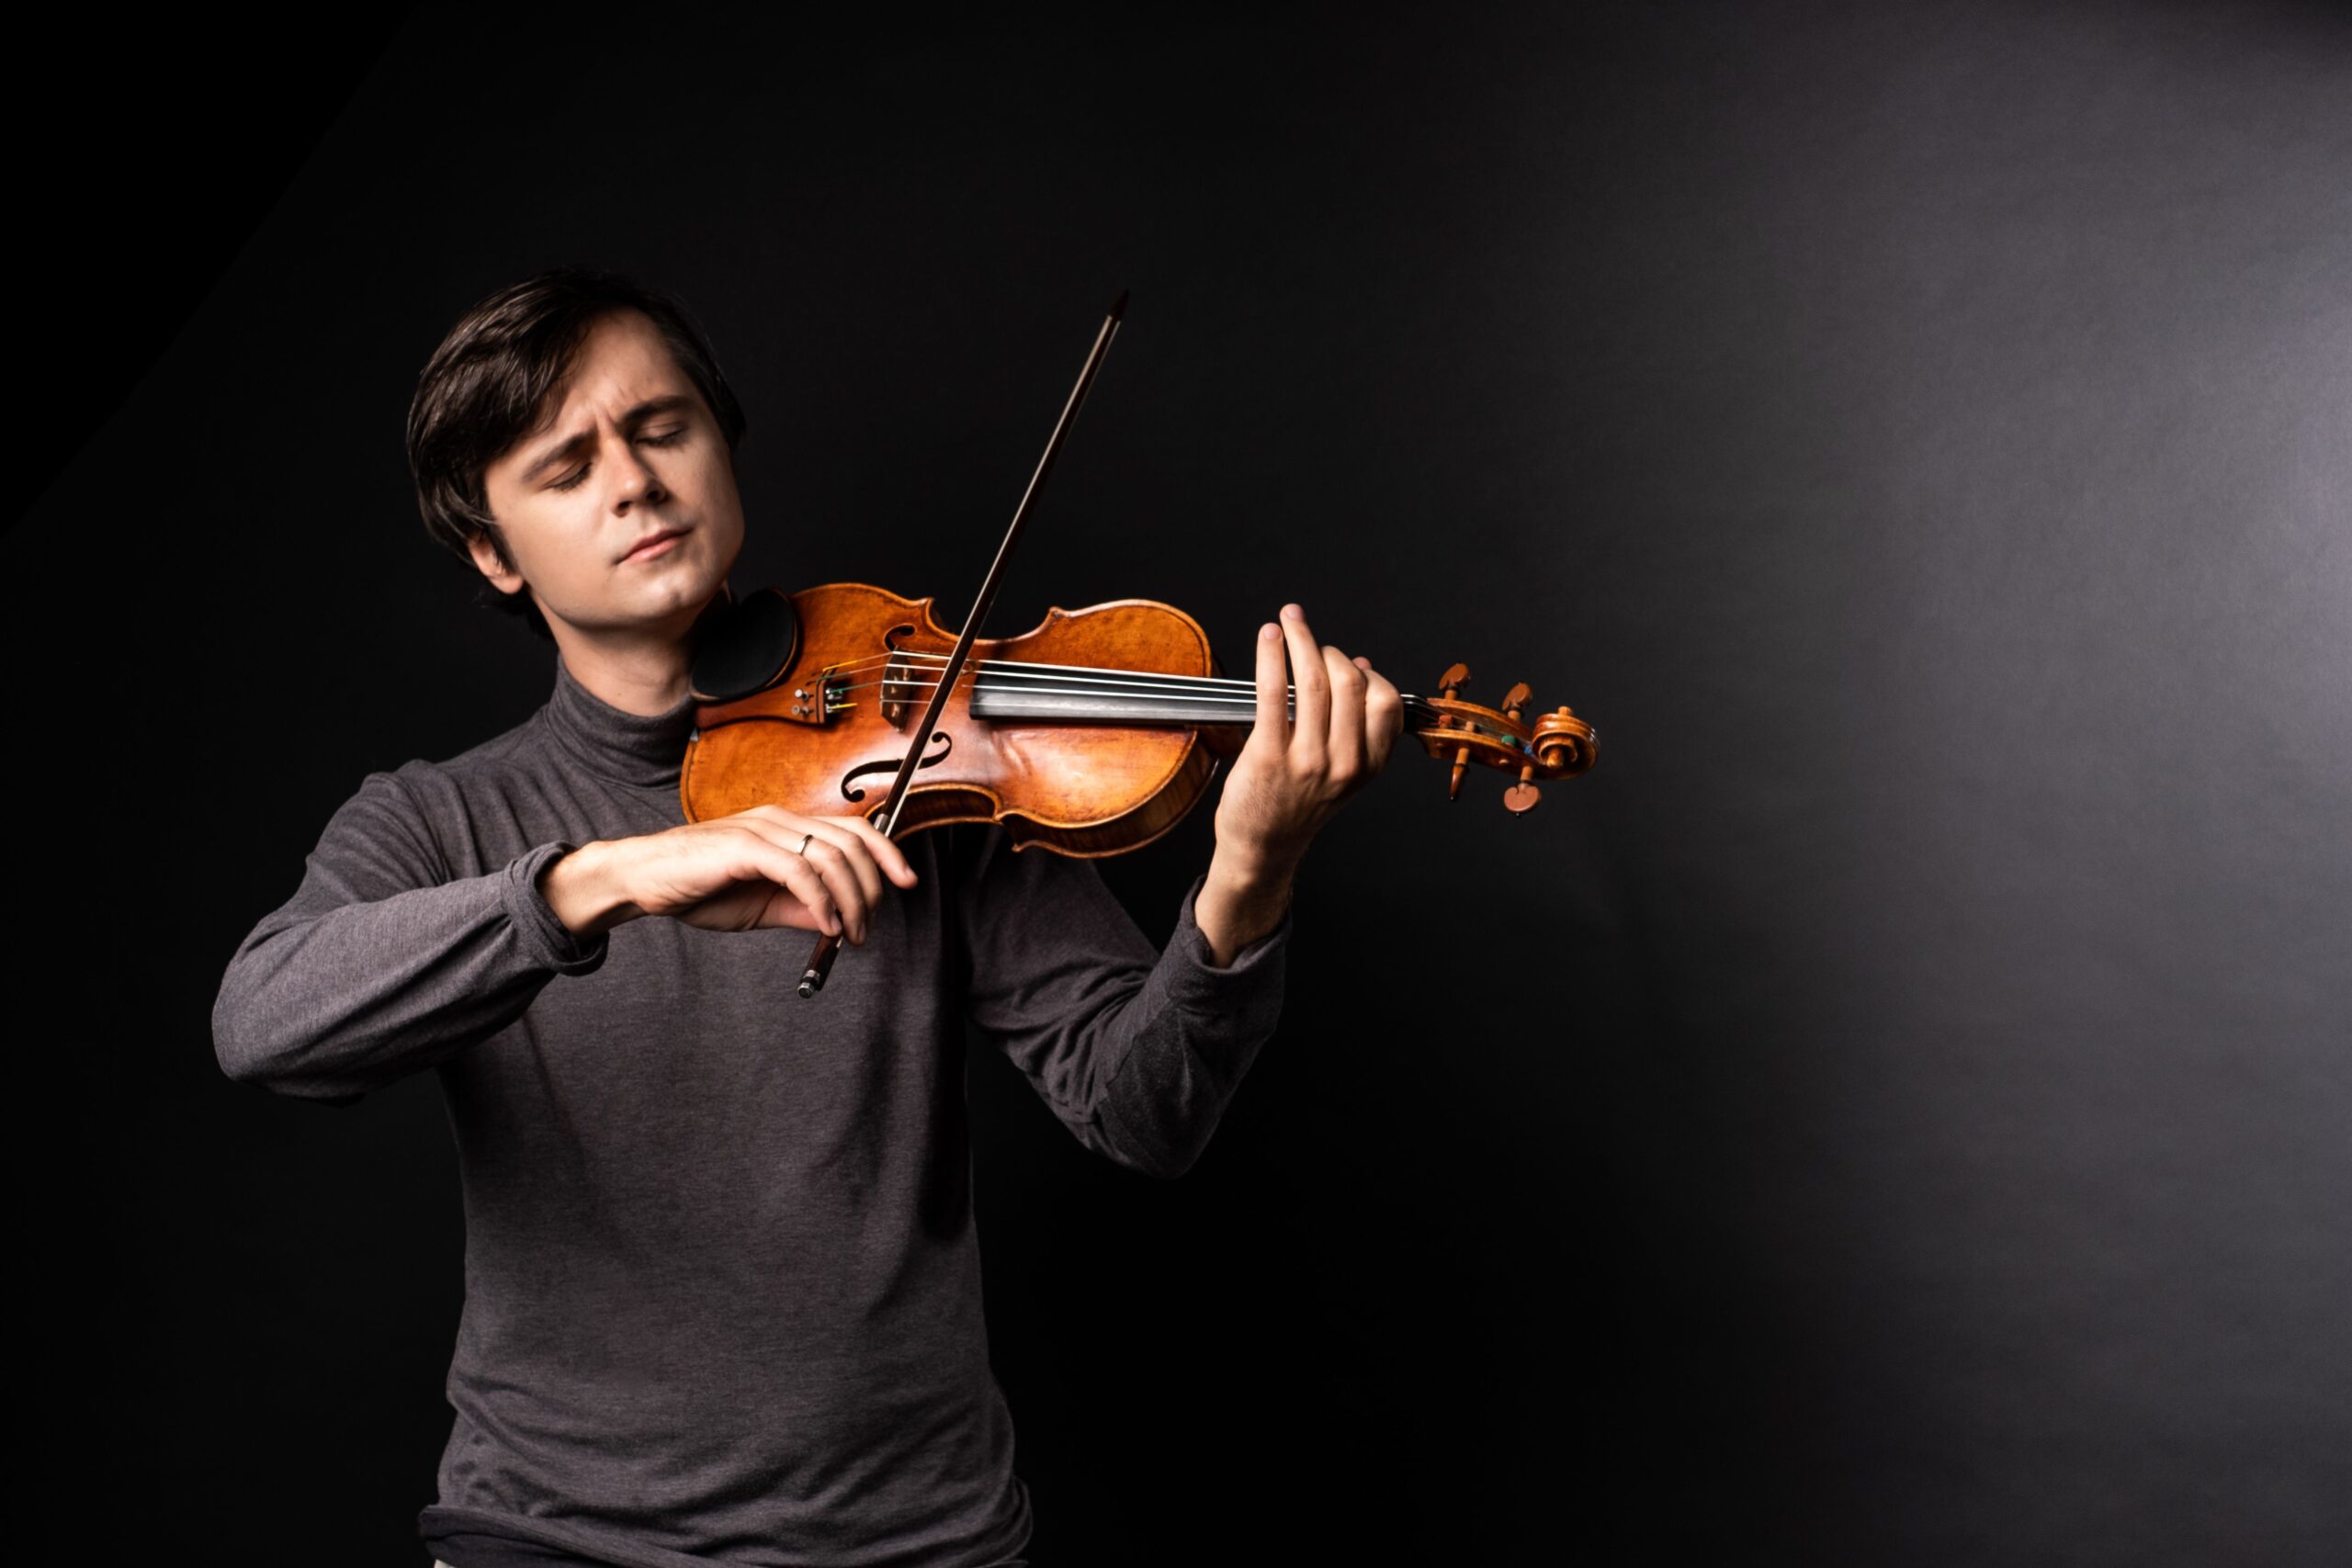 Aleksey Semenenko spielt mit geschlossenen Augen auf seiner Geige